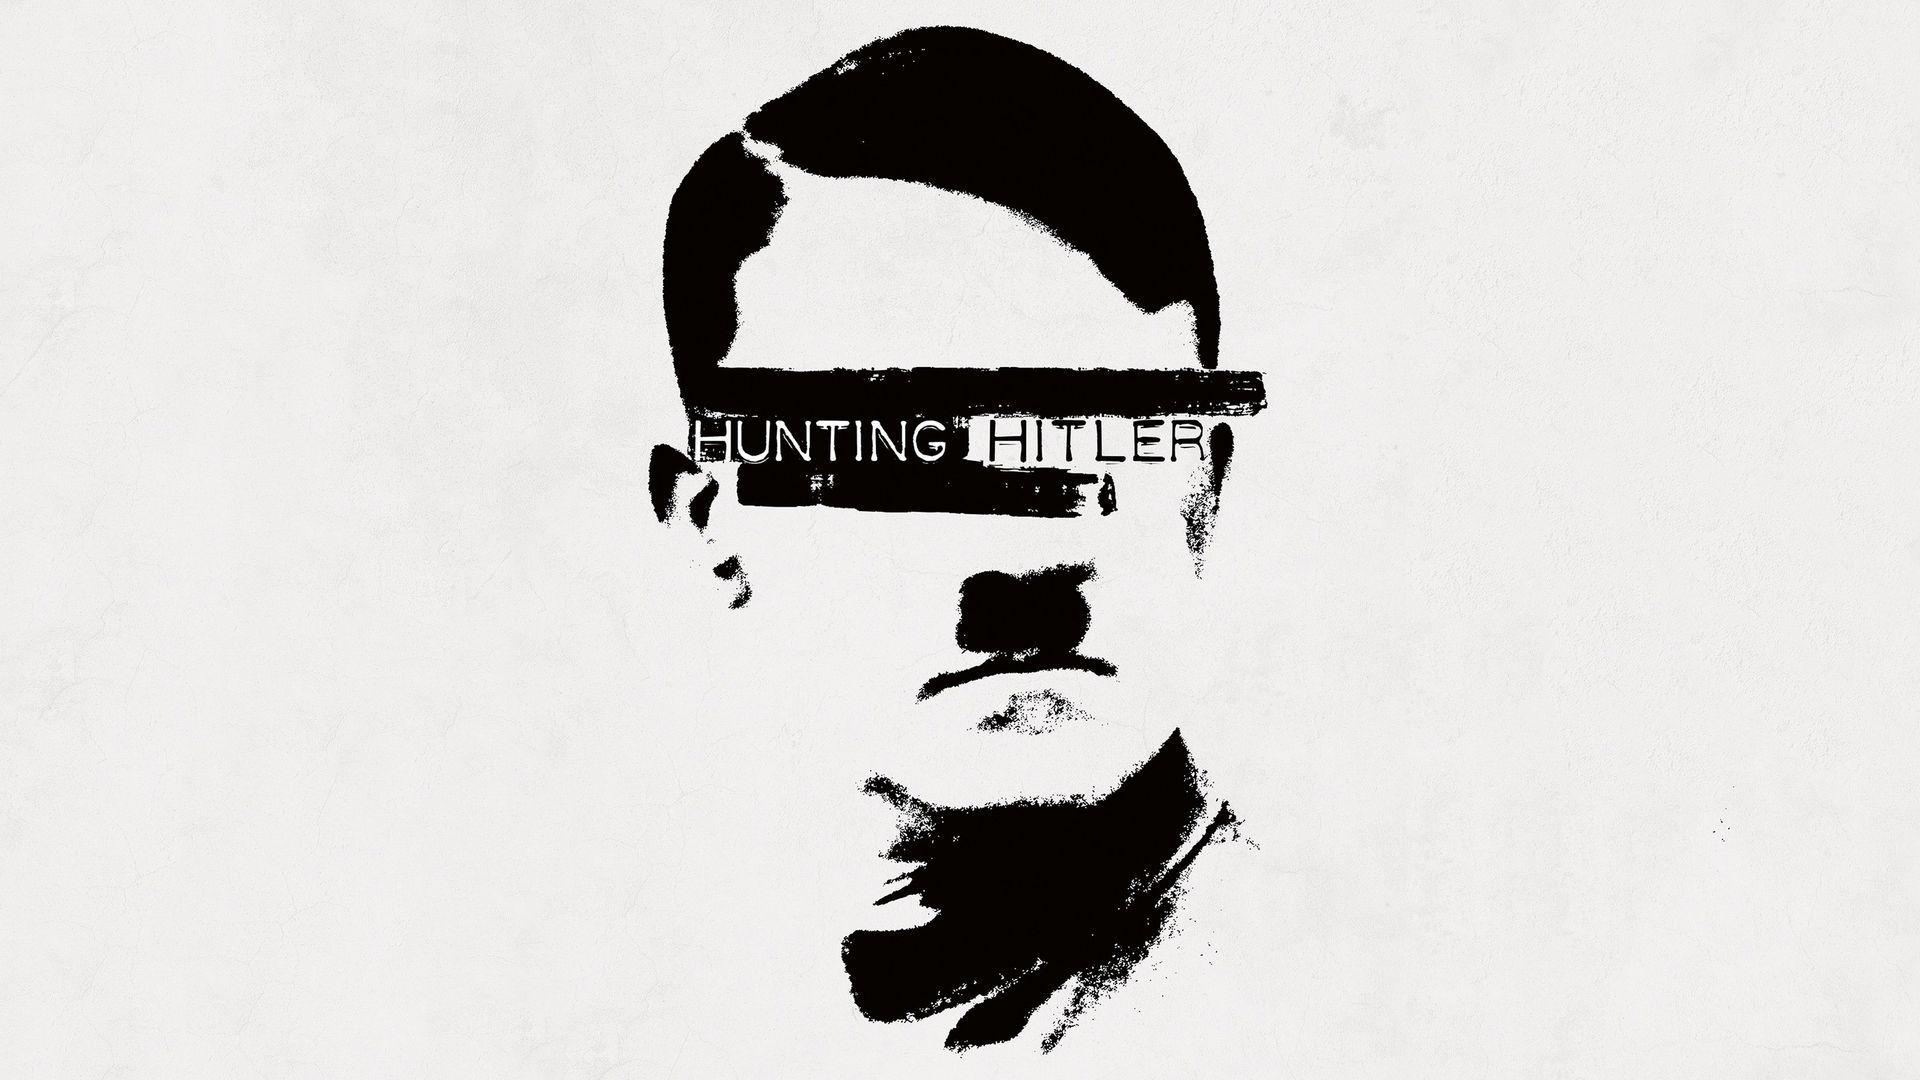 Hitler Logo - Hunting Hitler Episodes on Prime Video, Hulu, History